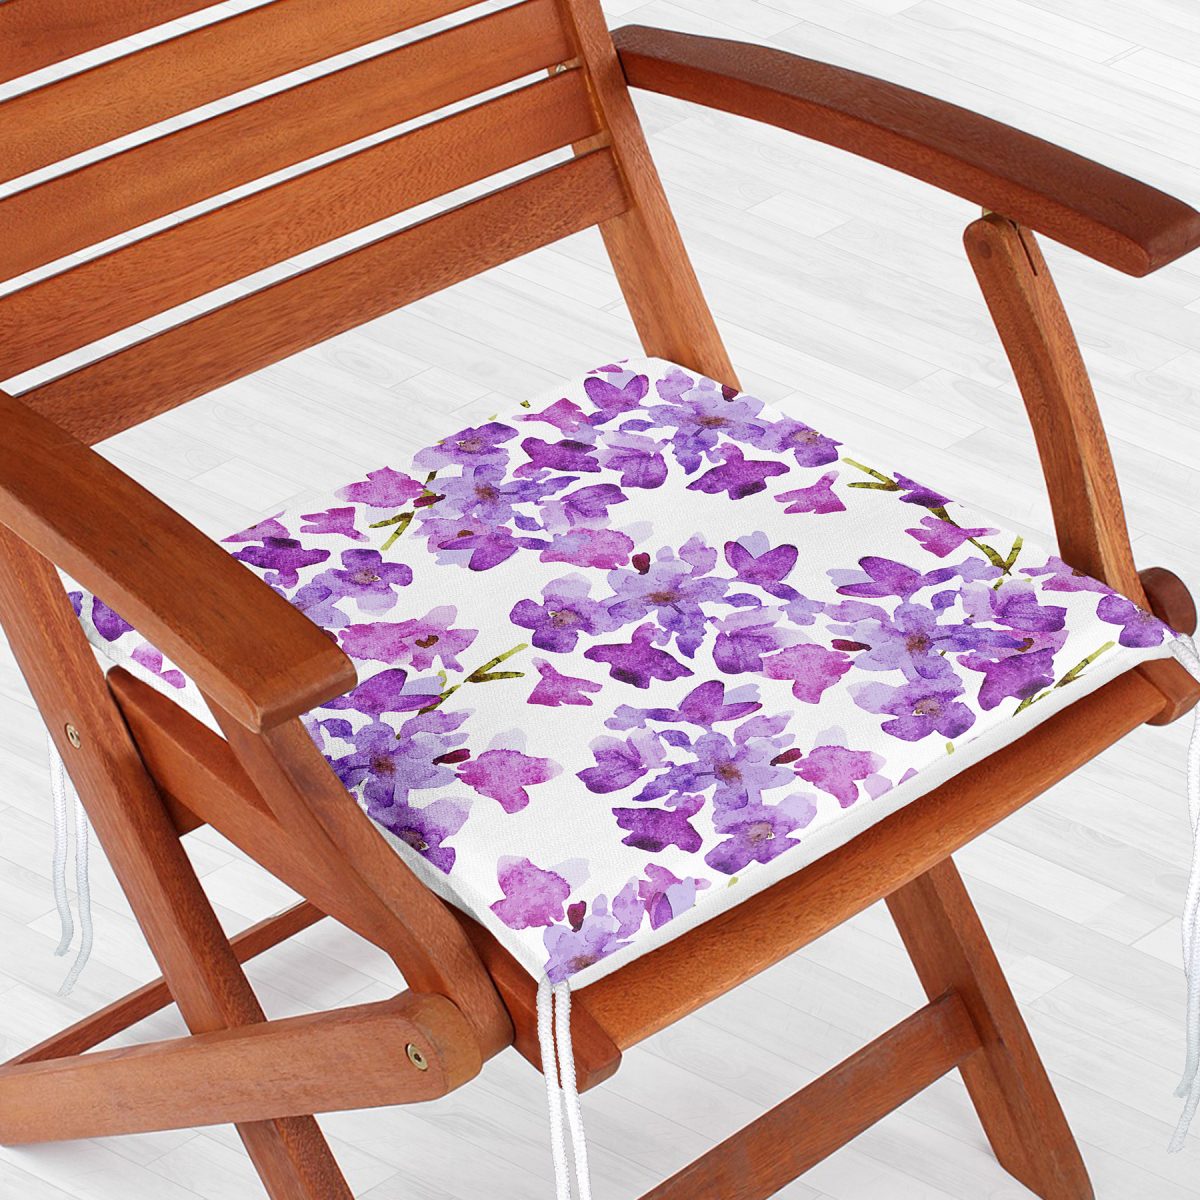 Çiçek Desenli Dekorati Kare Sandalye Minderi 40x40cm ermuarlı Realhomes